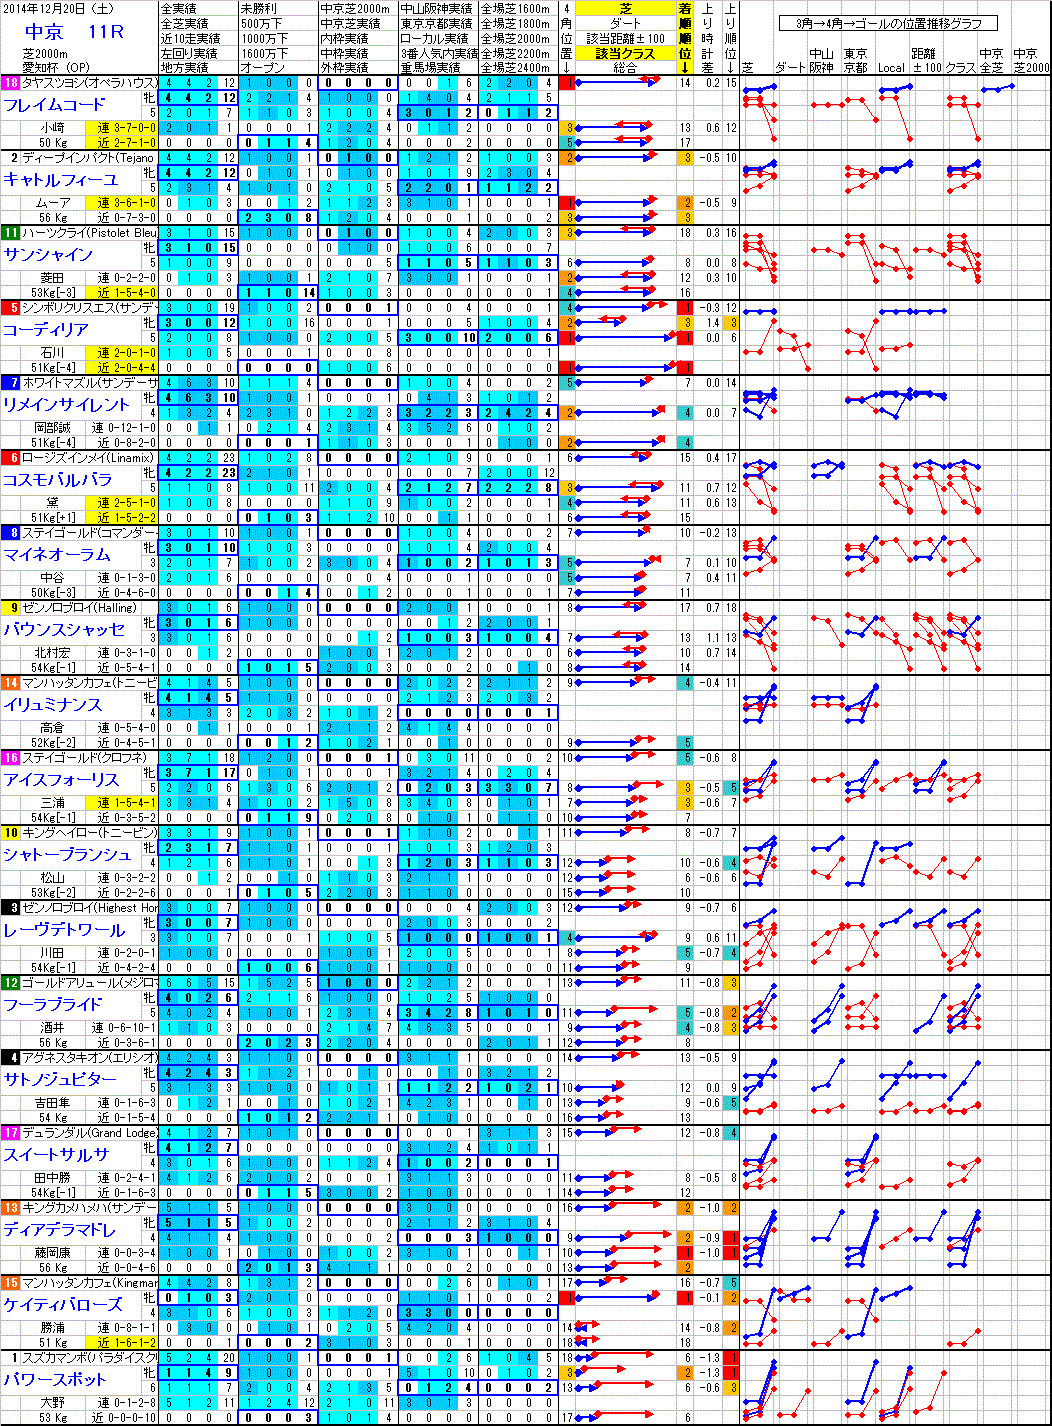 中京 2014年12月20日 （土） ： 11R － 分析データ